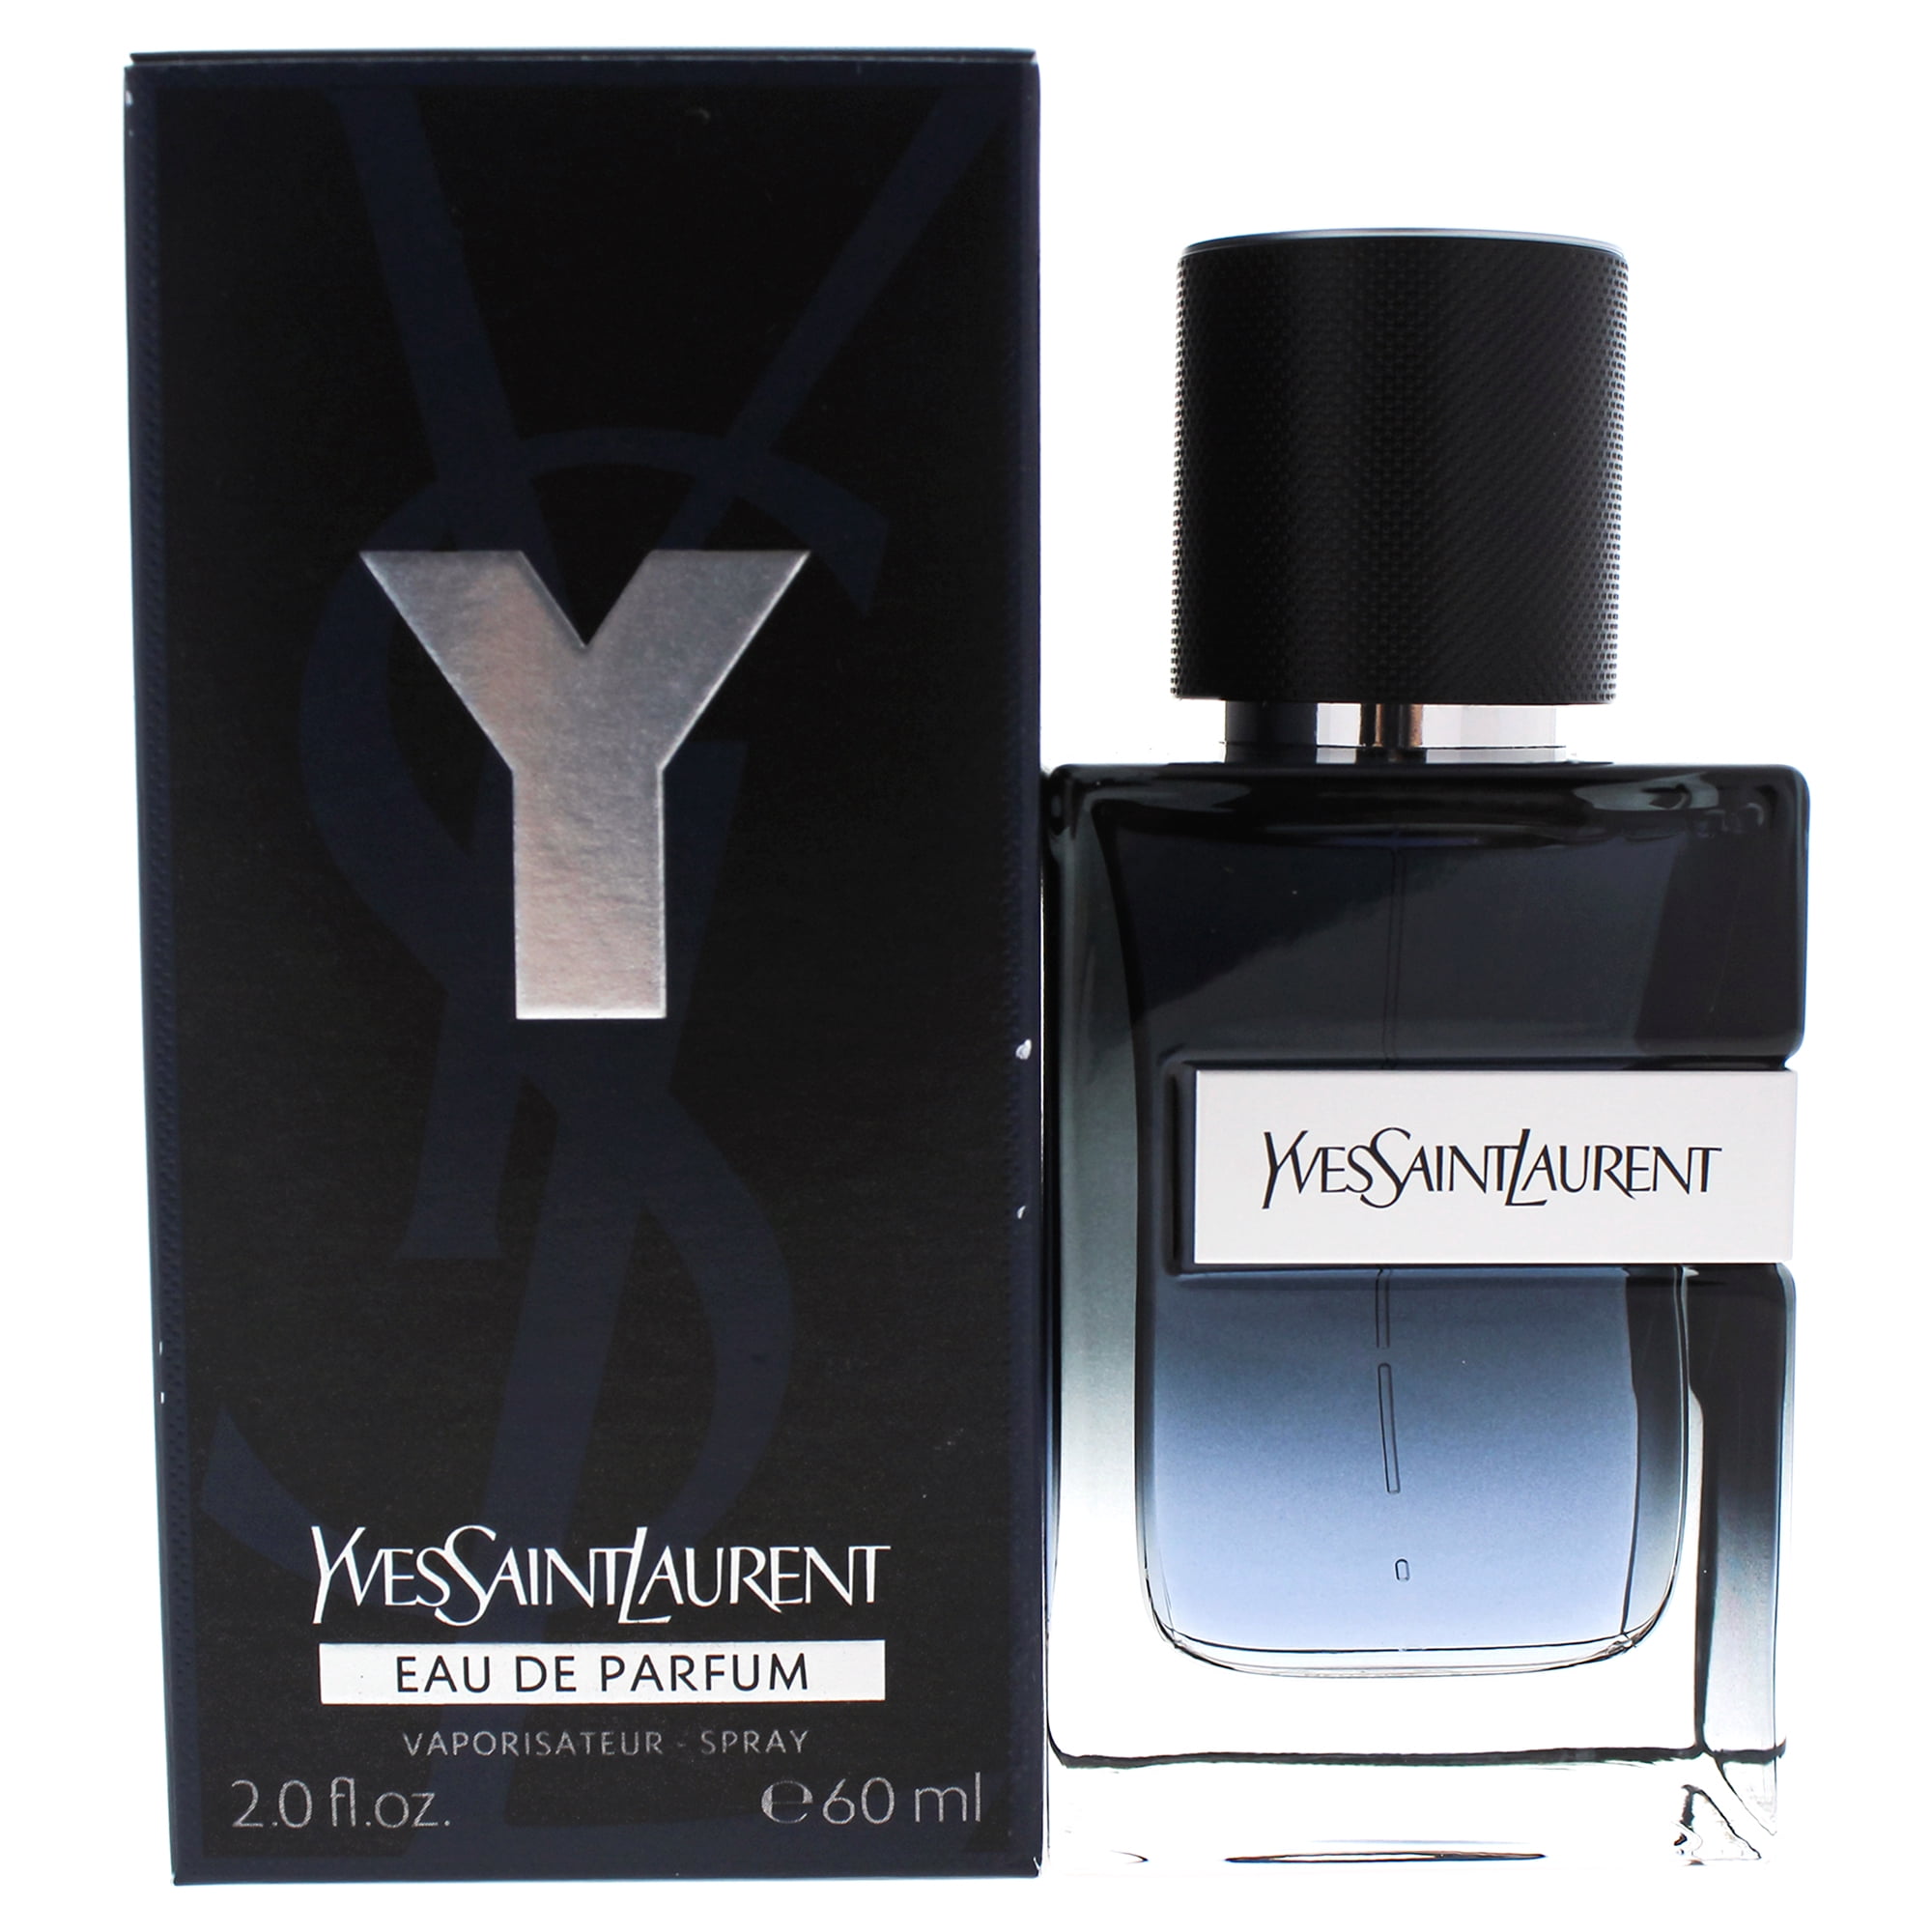 Yves Saint Laurent Y Eau de Parfum Perfume for Women, 2 Oz Full Size